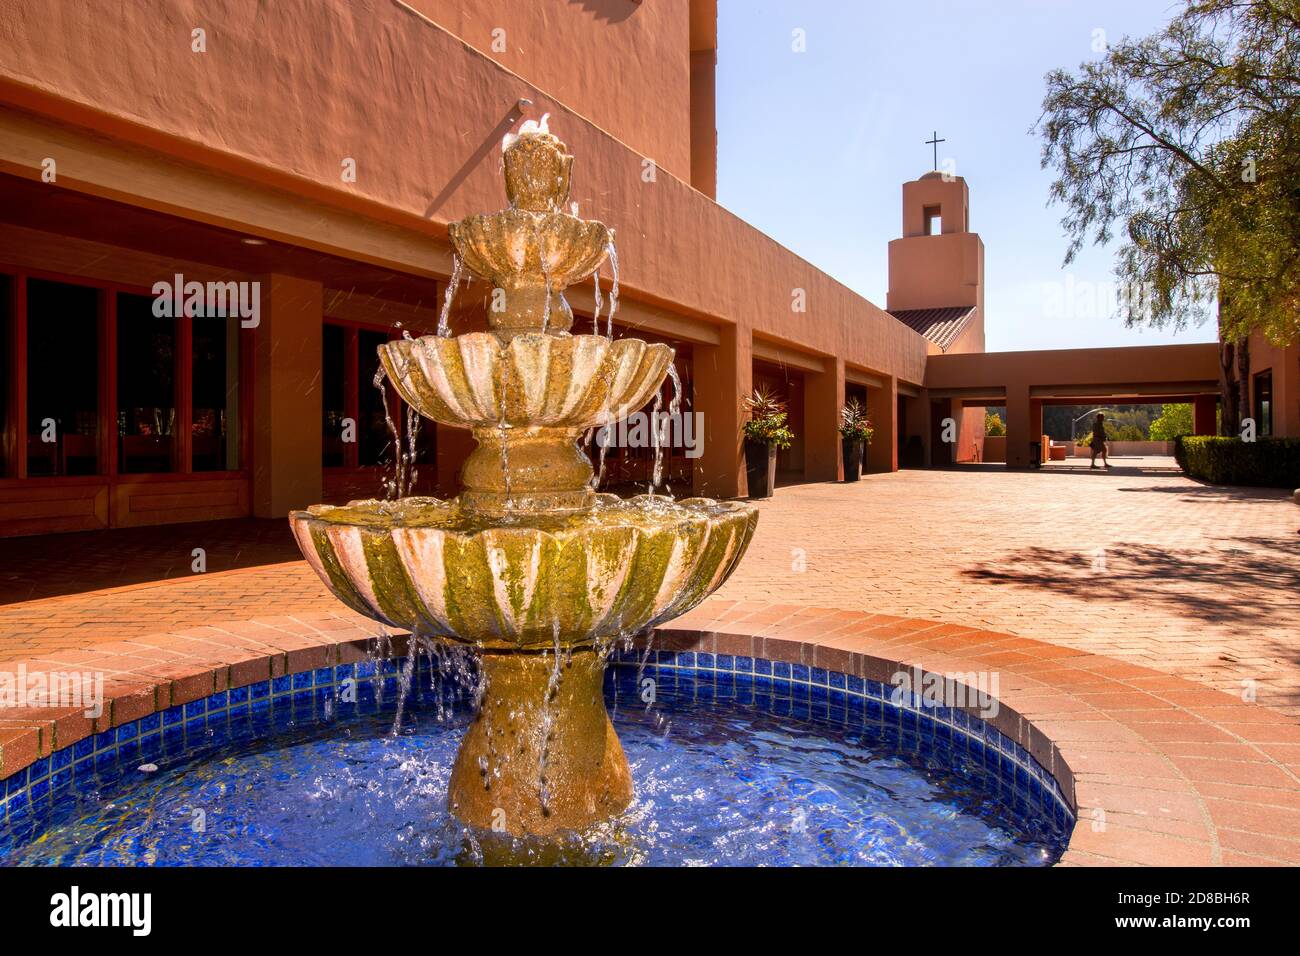 Ein kühler Brunnen sprudelt in der Nachmittagssonne im Innenhof einer katholischen Kirche in Südkalifornien. Stockfoto